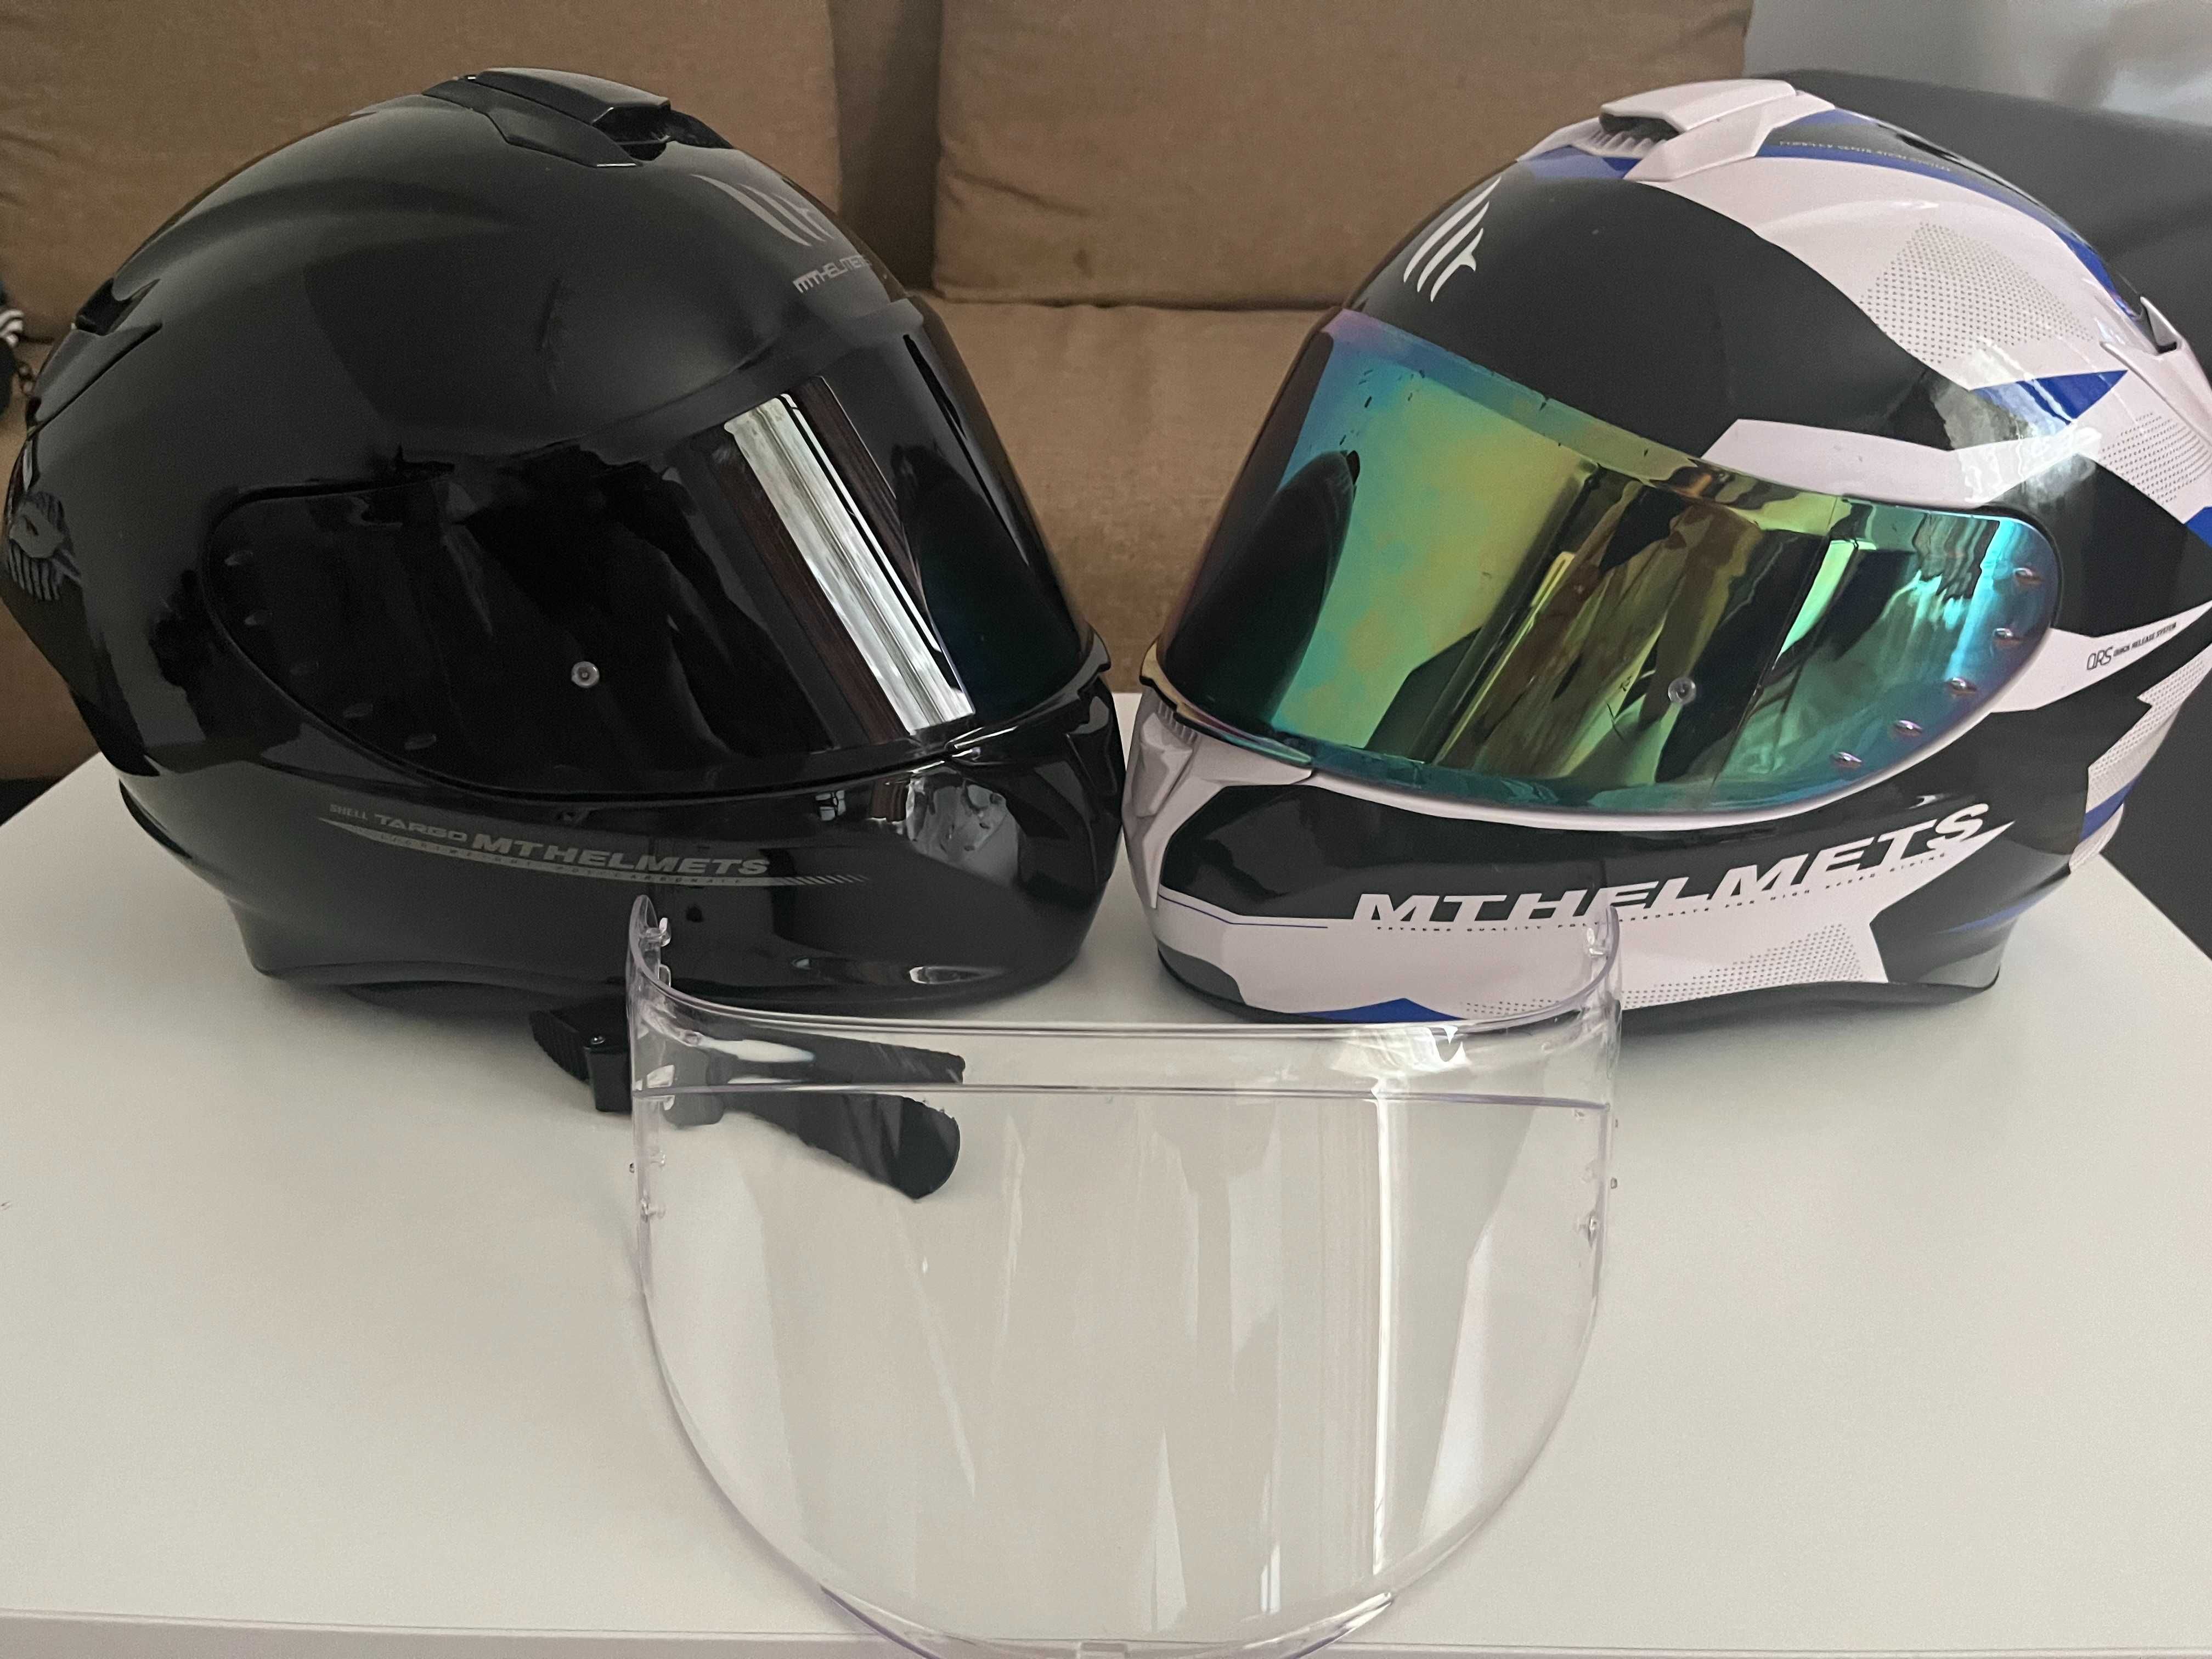 Casca MT Helmets Targo Shell / Polycarbonate (viziere fumurii cadou)